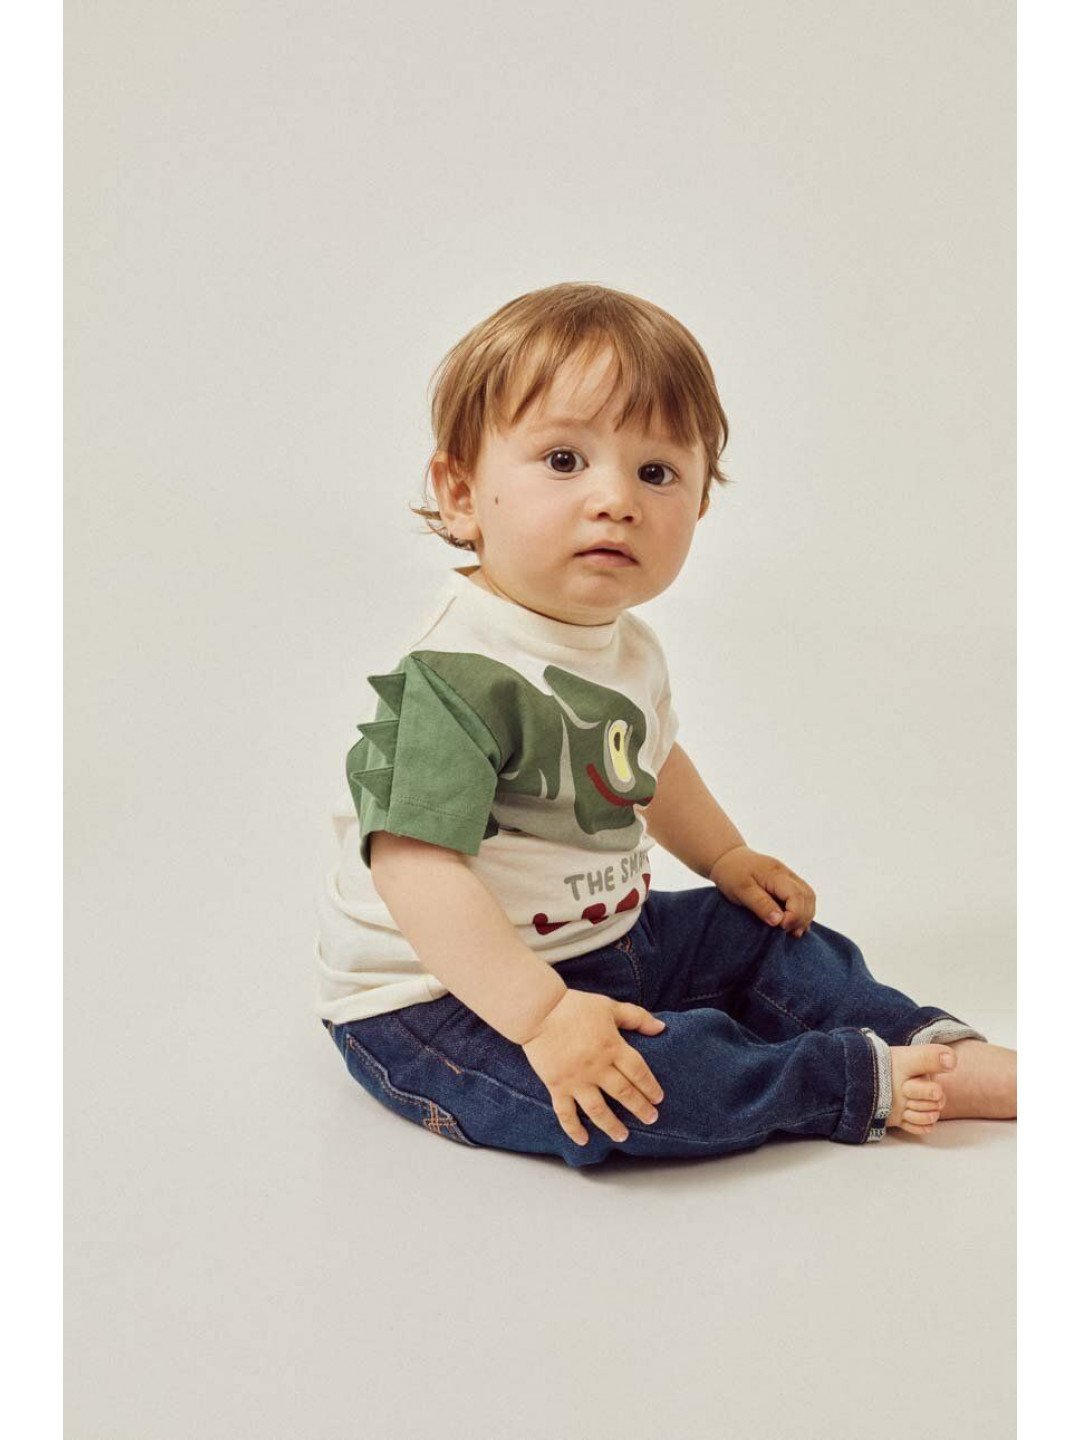 Dětské bavlněné tričko zippy béžová barva s potiskem